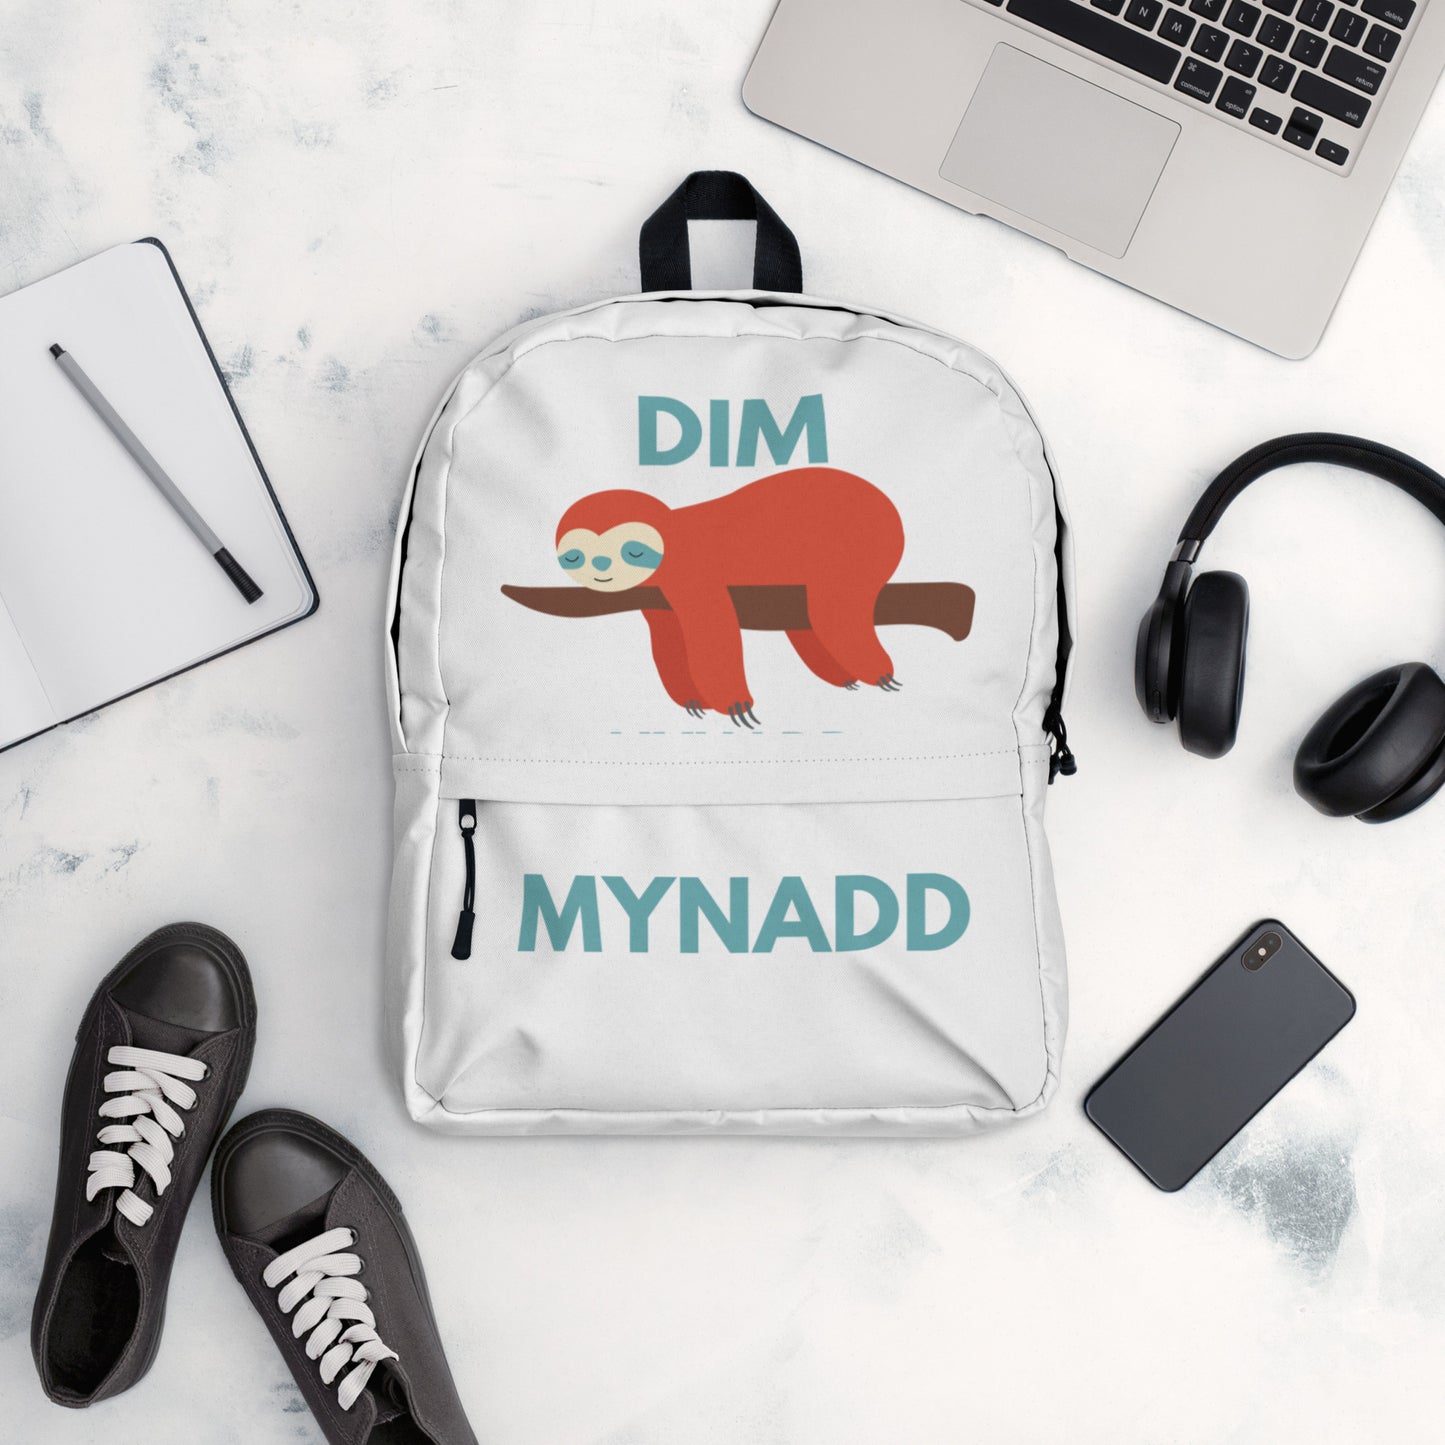 Dim Mynadd - Backpack